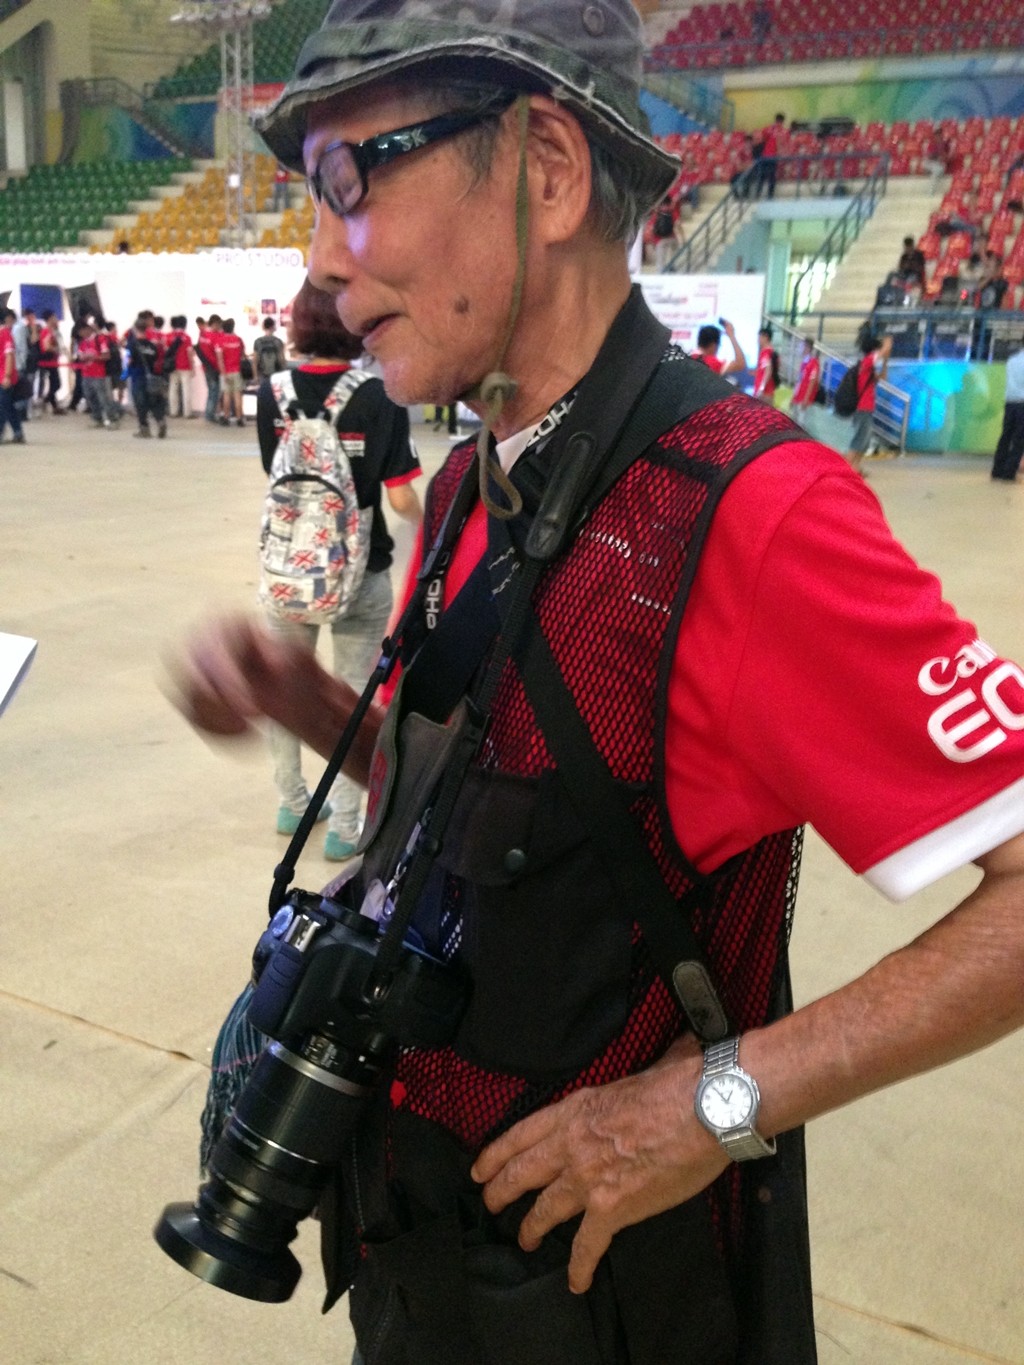 Sôi động ngày khai mạc cuộc thi nhiếp ảnh Canon PhotoMarathon 2014 tại Hà Nội ảnh 11